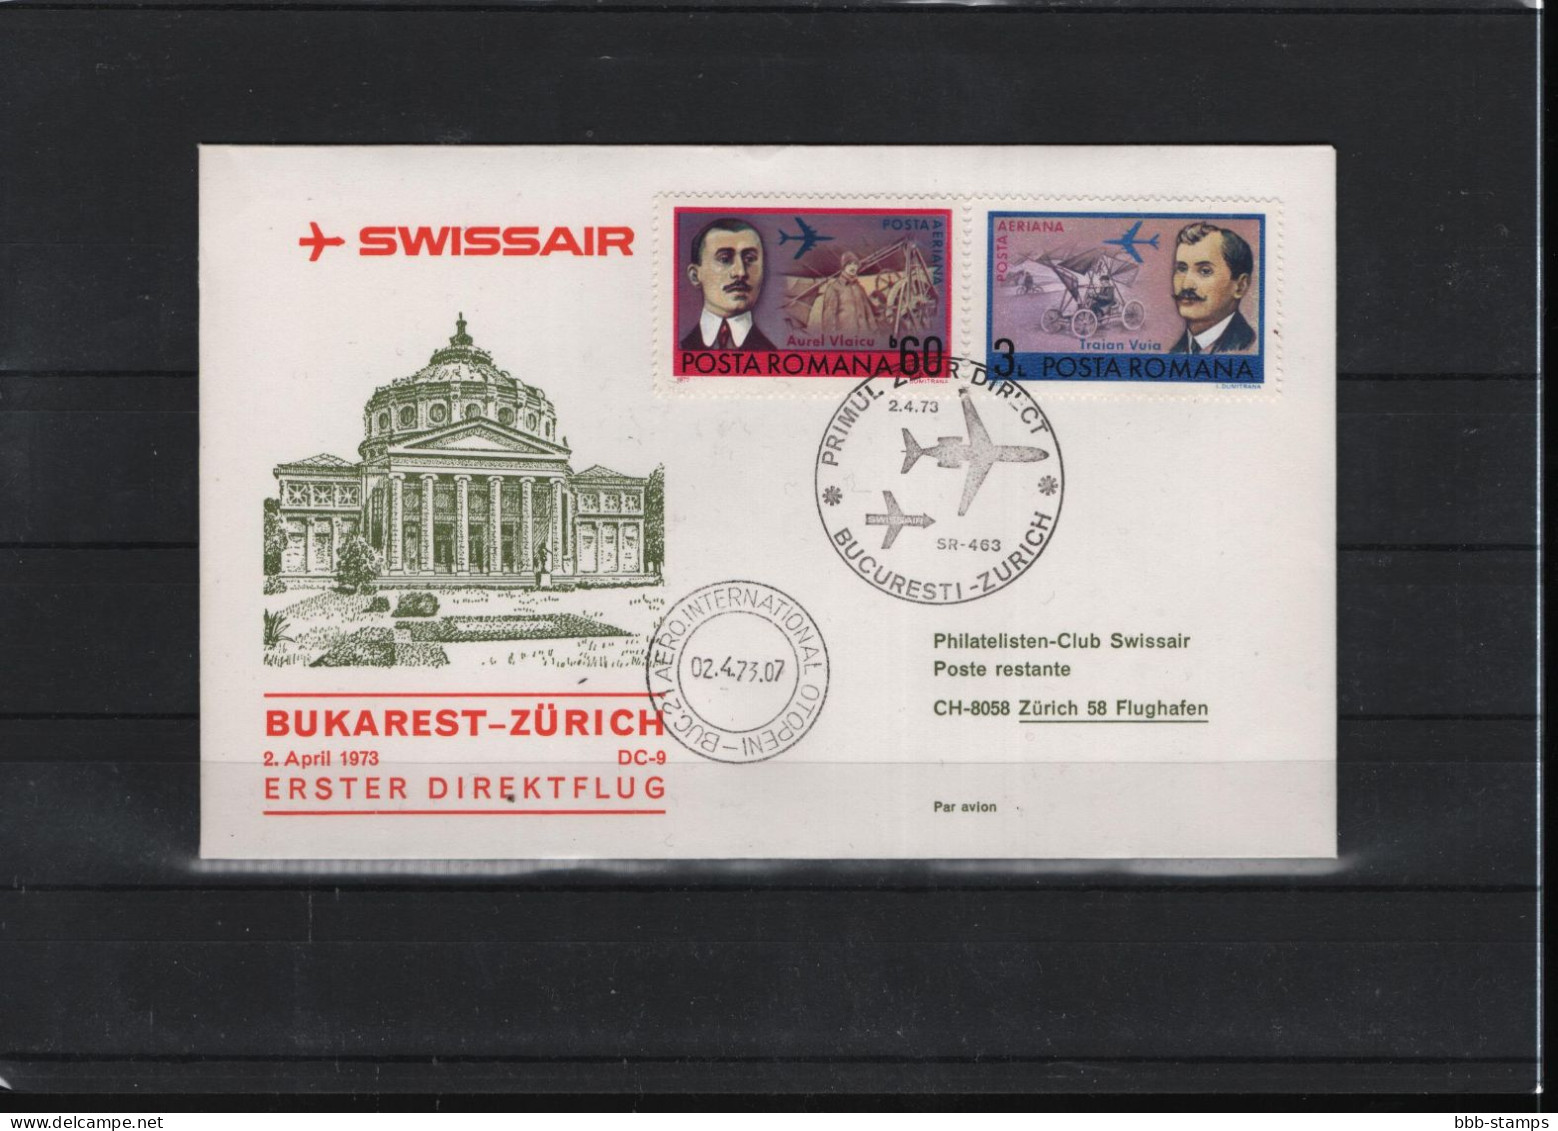 Schweiz Luftpost FFC Swissair  2.4.1973 Bukarest - Zürich - Premiers Vols